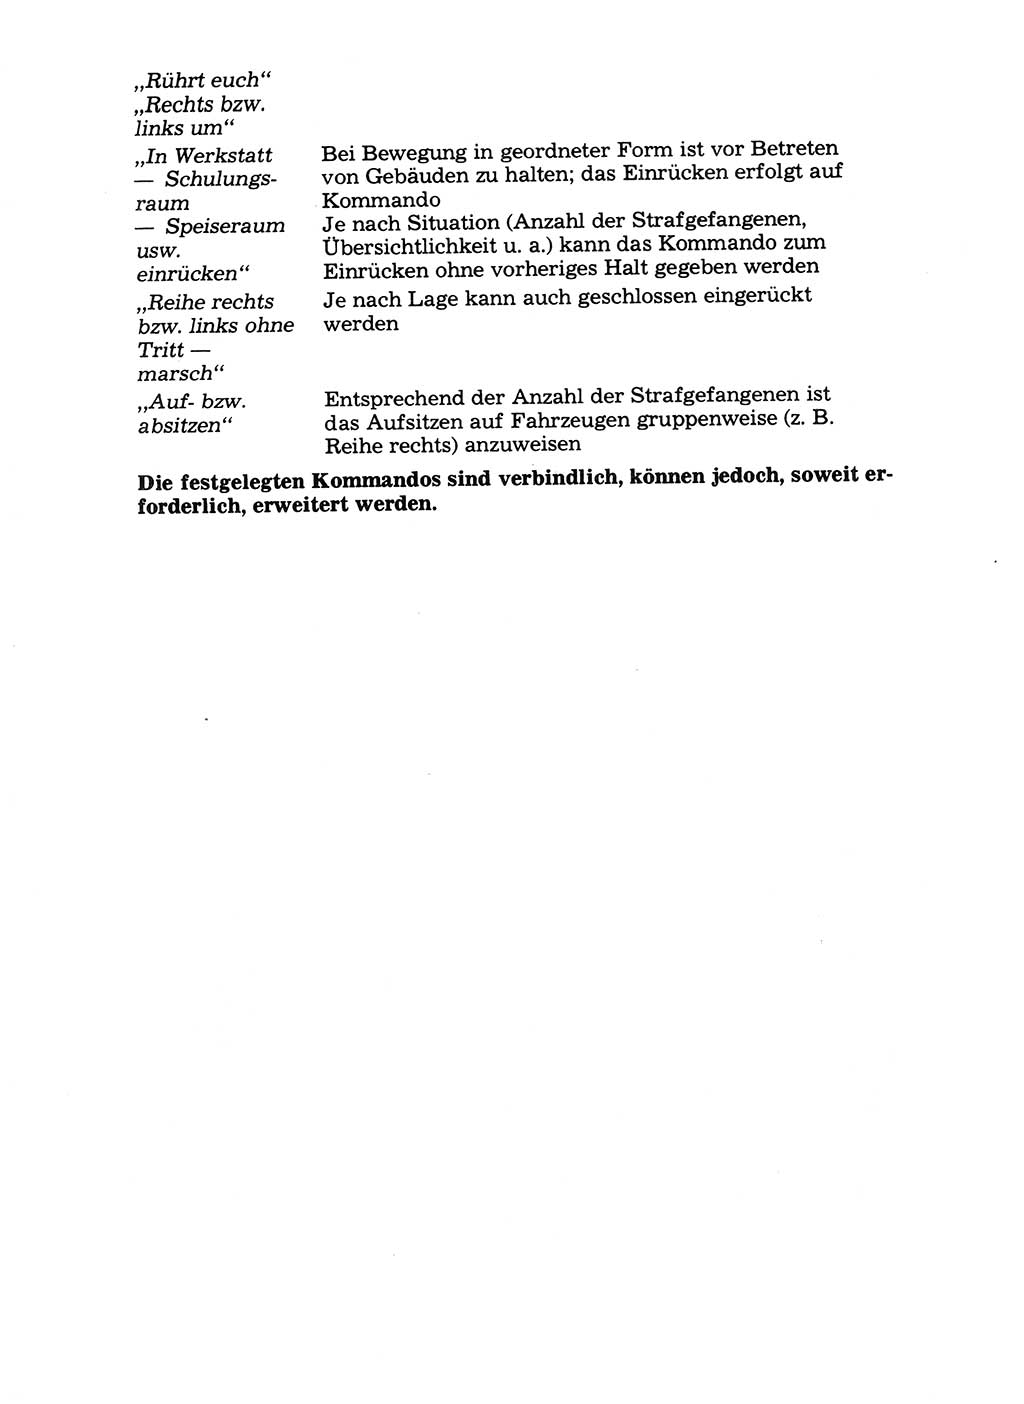 Handbuch für operative Dienste, Abteilung Strafvollzug (SV) [Ministerium des Innern (MdI) Deutsche Demokratische Republik (DDR)] 1981, Seite 156 (Hb. op. D. Abt. SV MdI DDR 1981, S. 156)